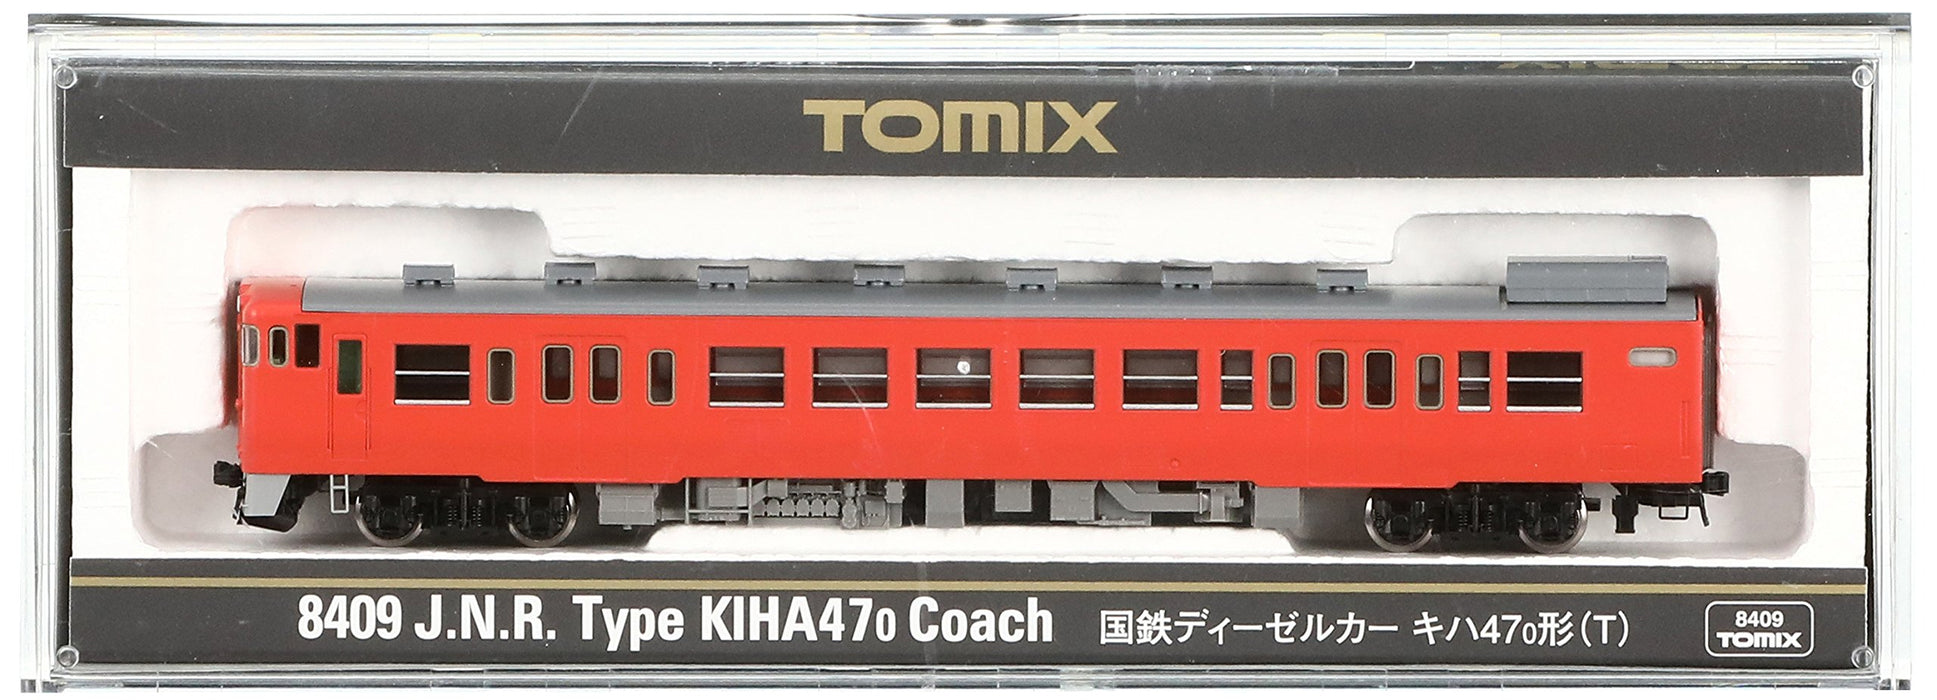 Tomytec Dieseltriebwagenmodell - Tomix Spur N Typ Kiha47 0 - T 8409